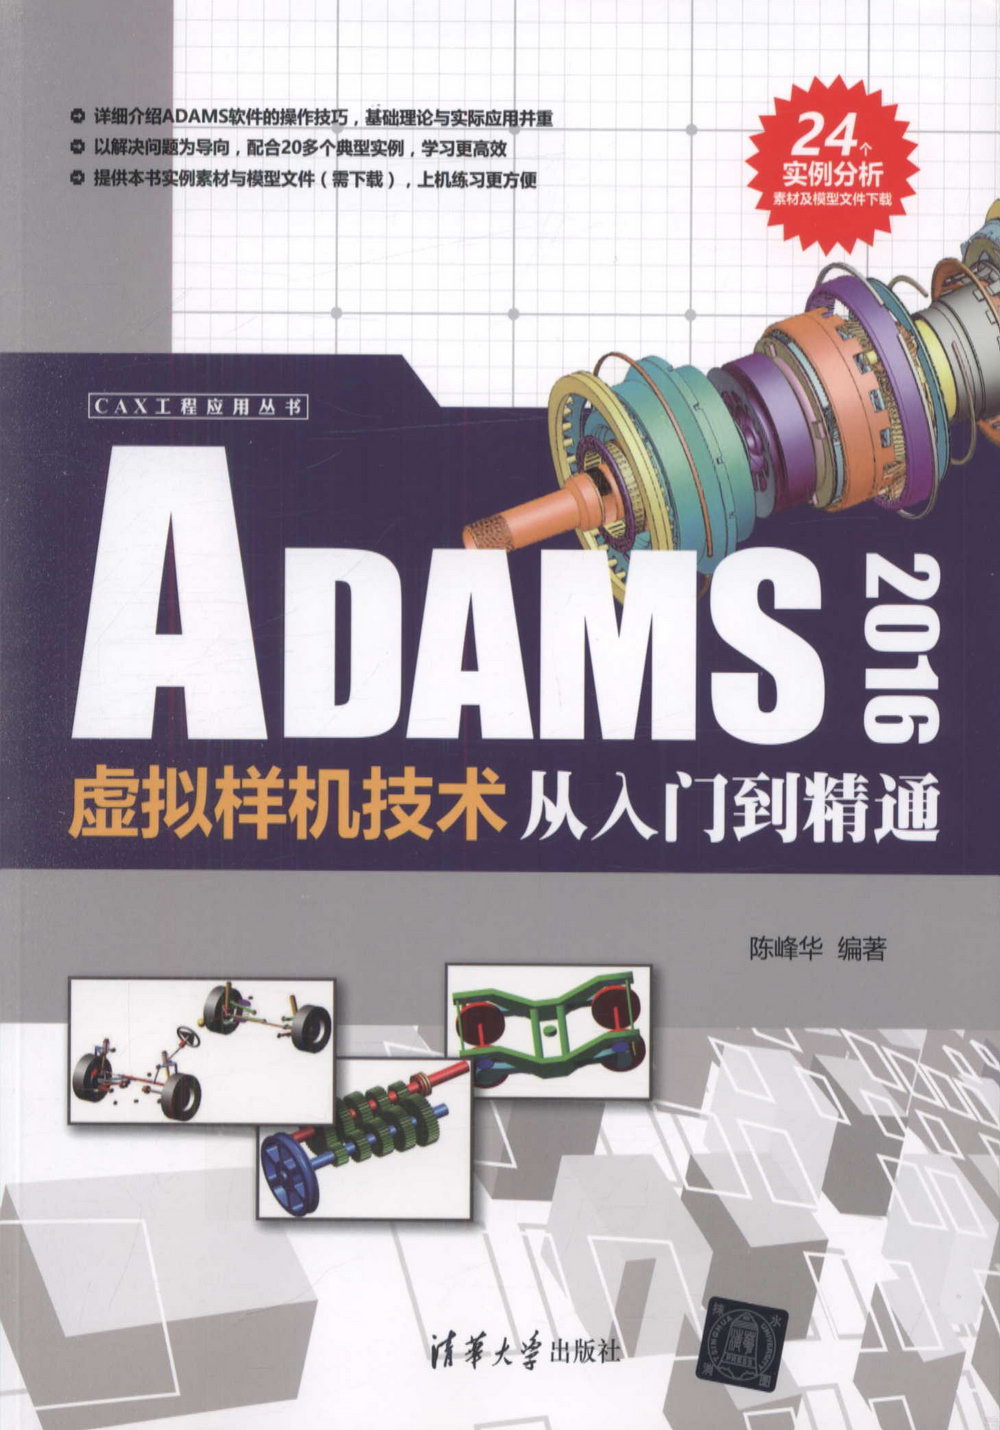 ADAMS 2016虛擬樣機技術從入門到精通